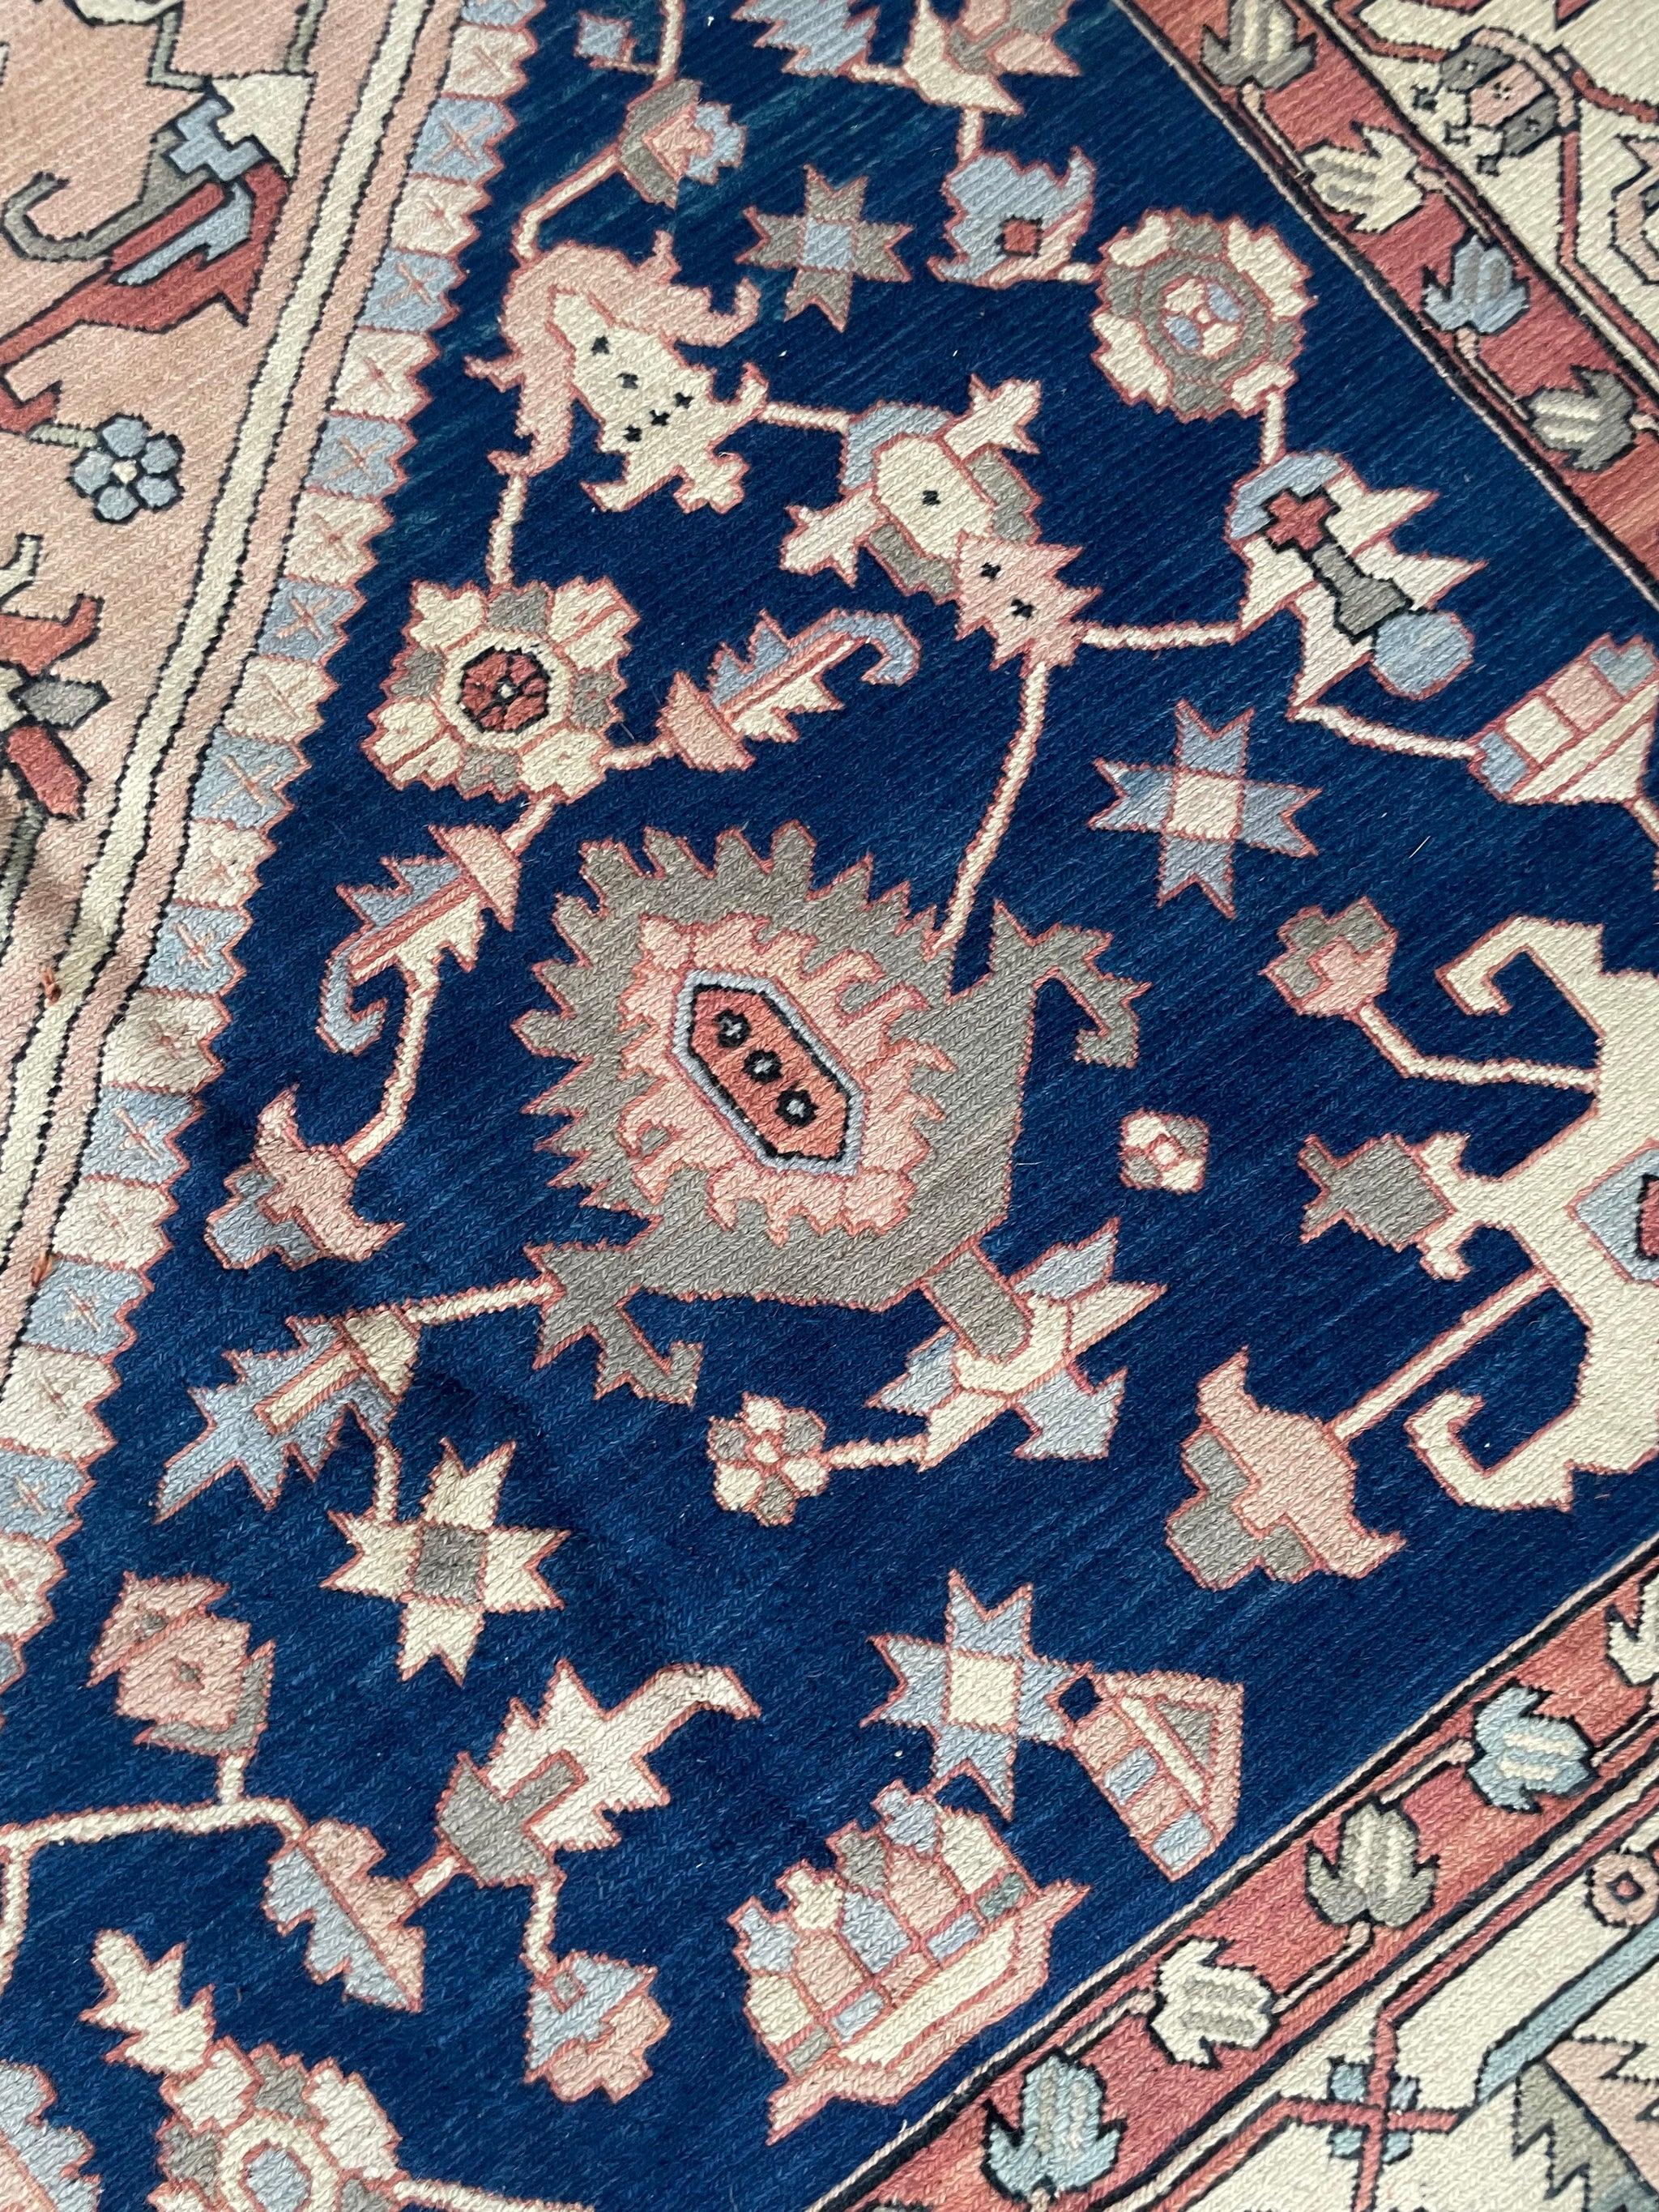 Nordwestlicher Stammeskunst-Teppich in Palastgröße, ca. 1950-60''s (Wolle)